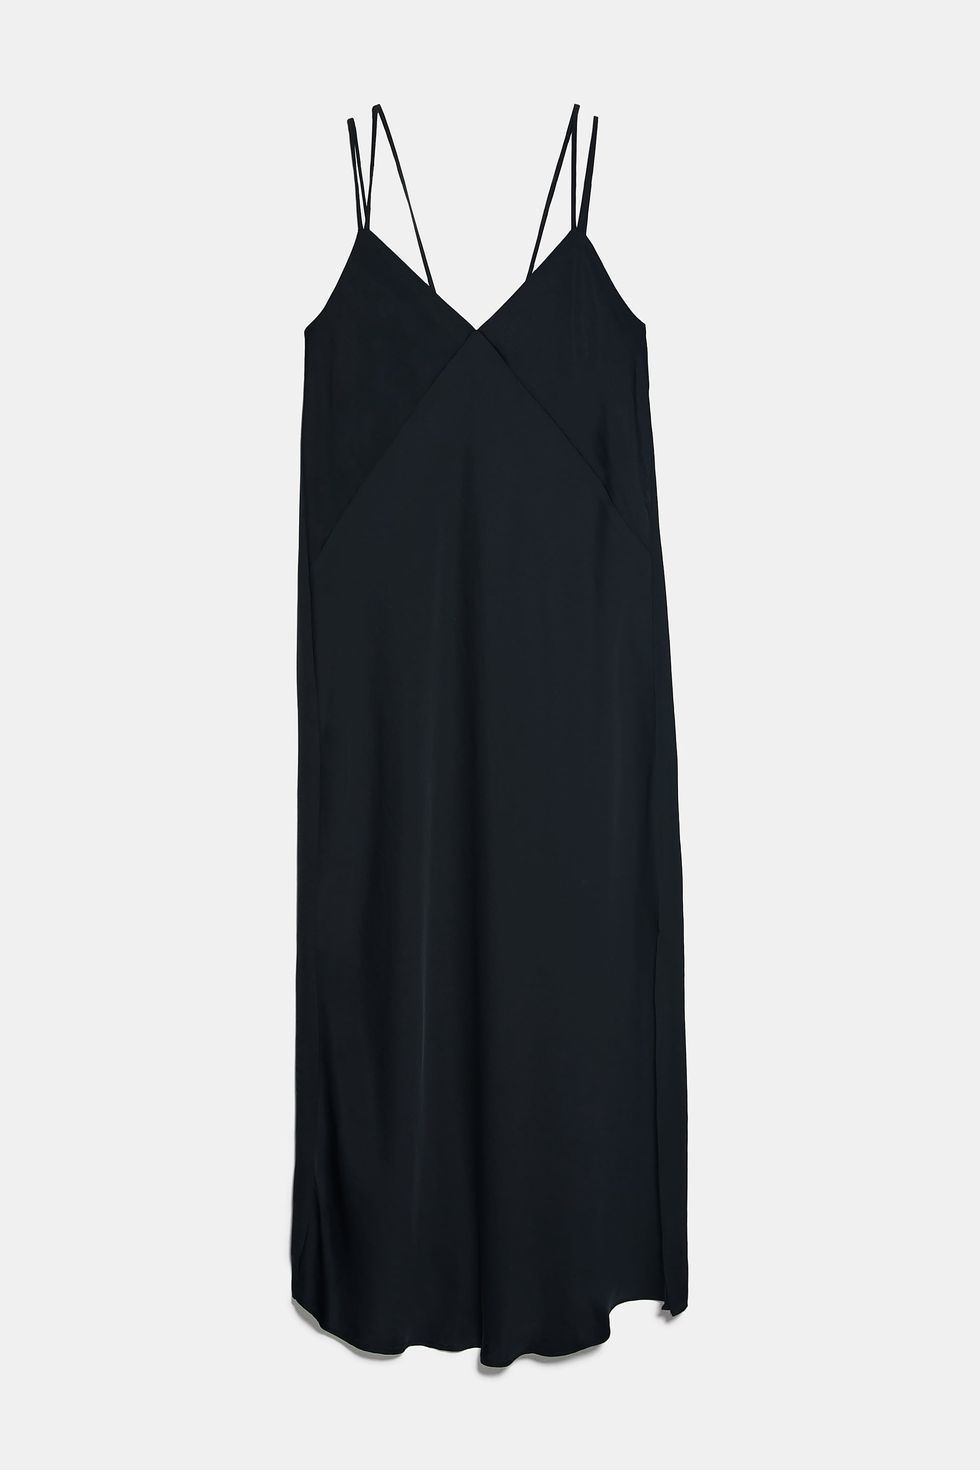 Slip dress Zara moda Primavera Estate 2020 